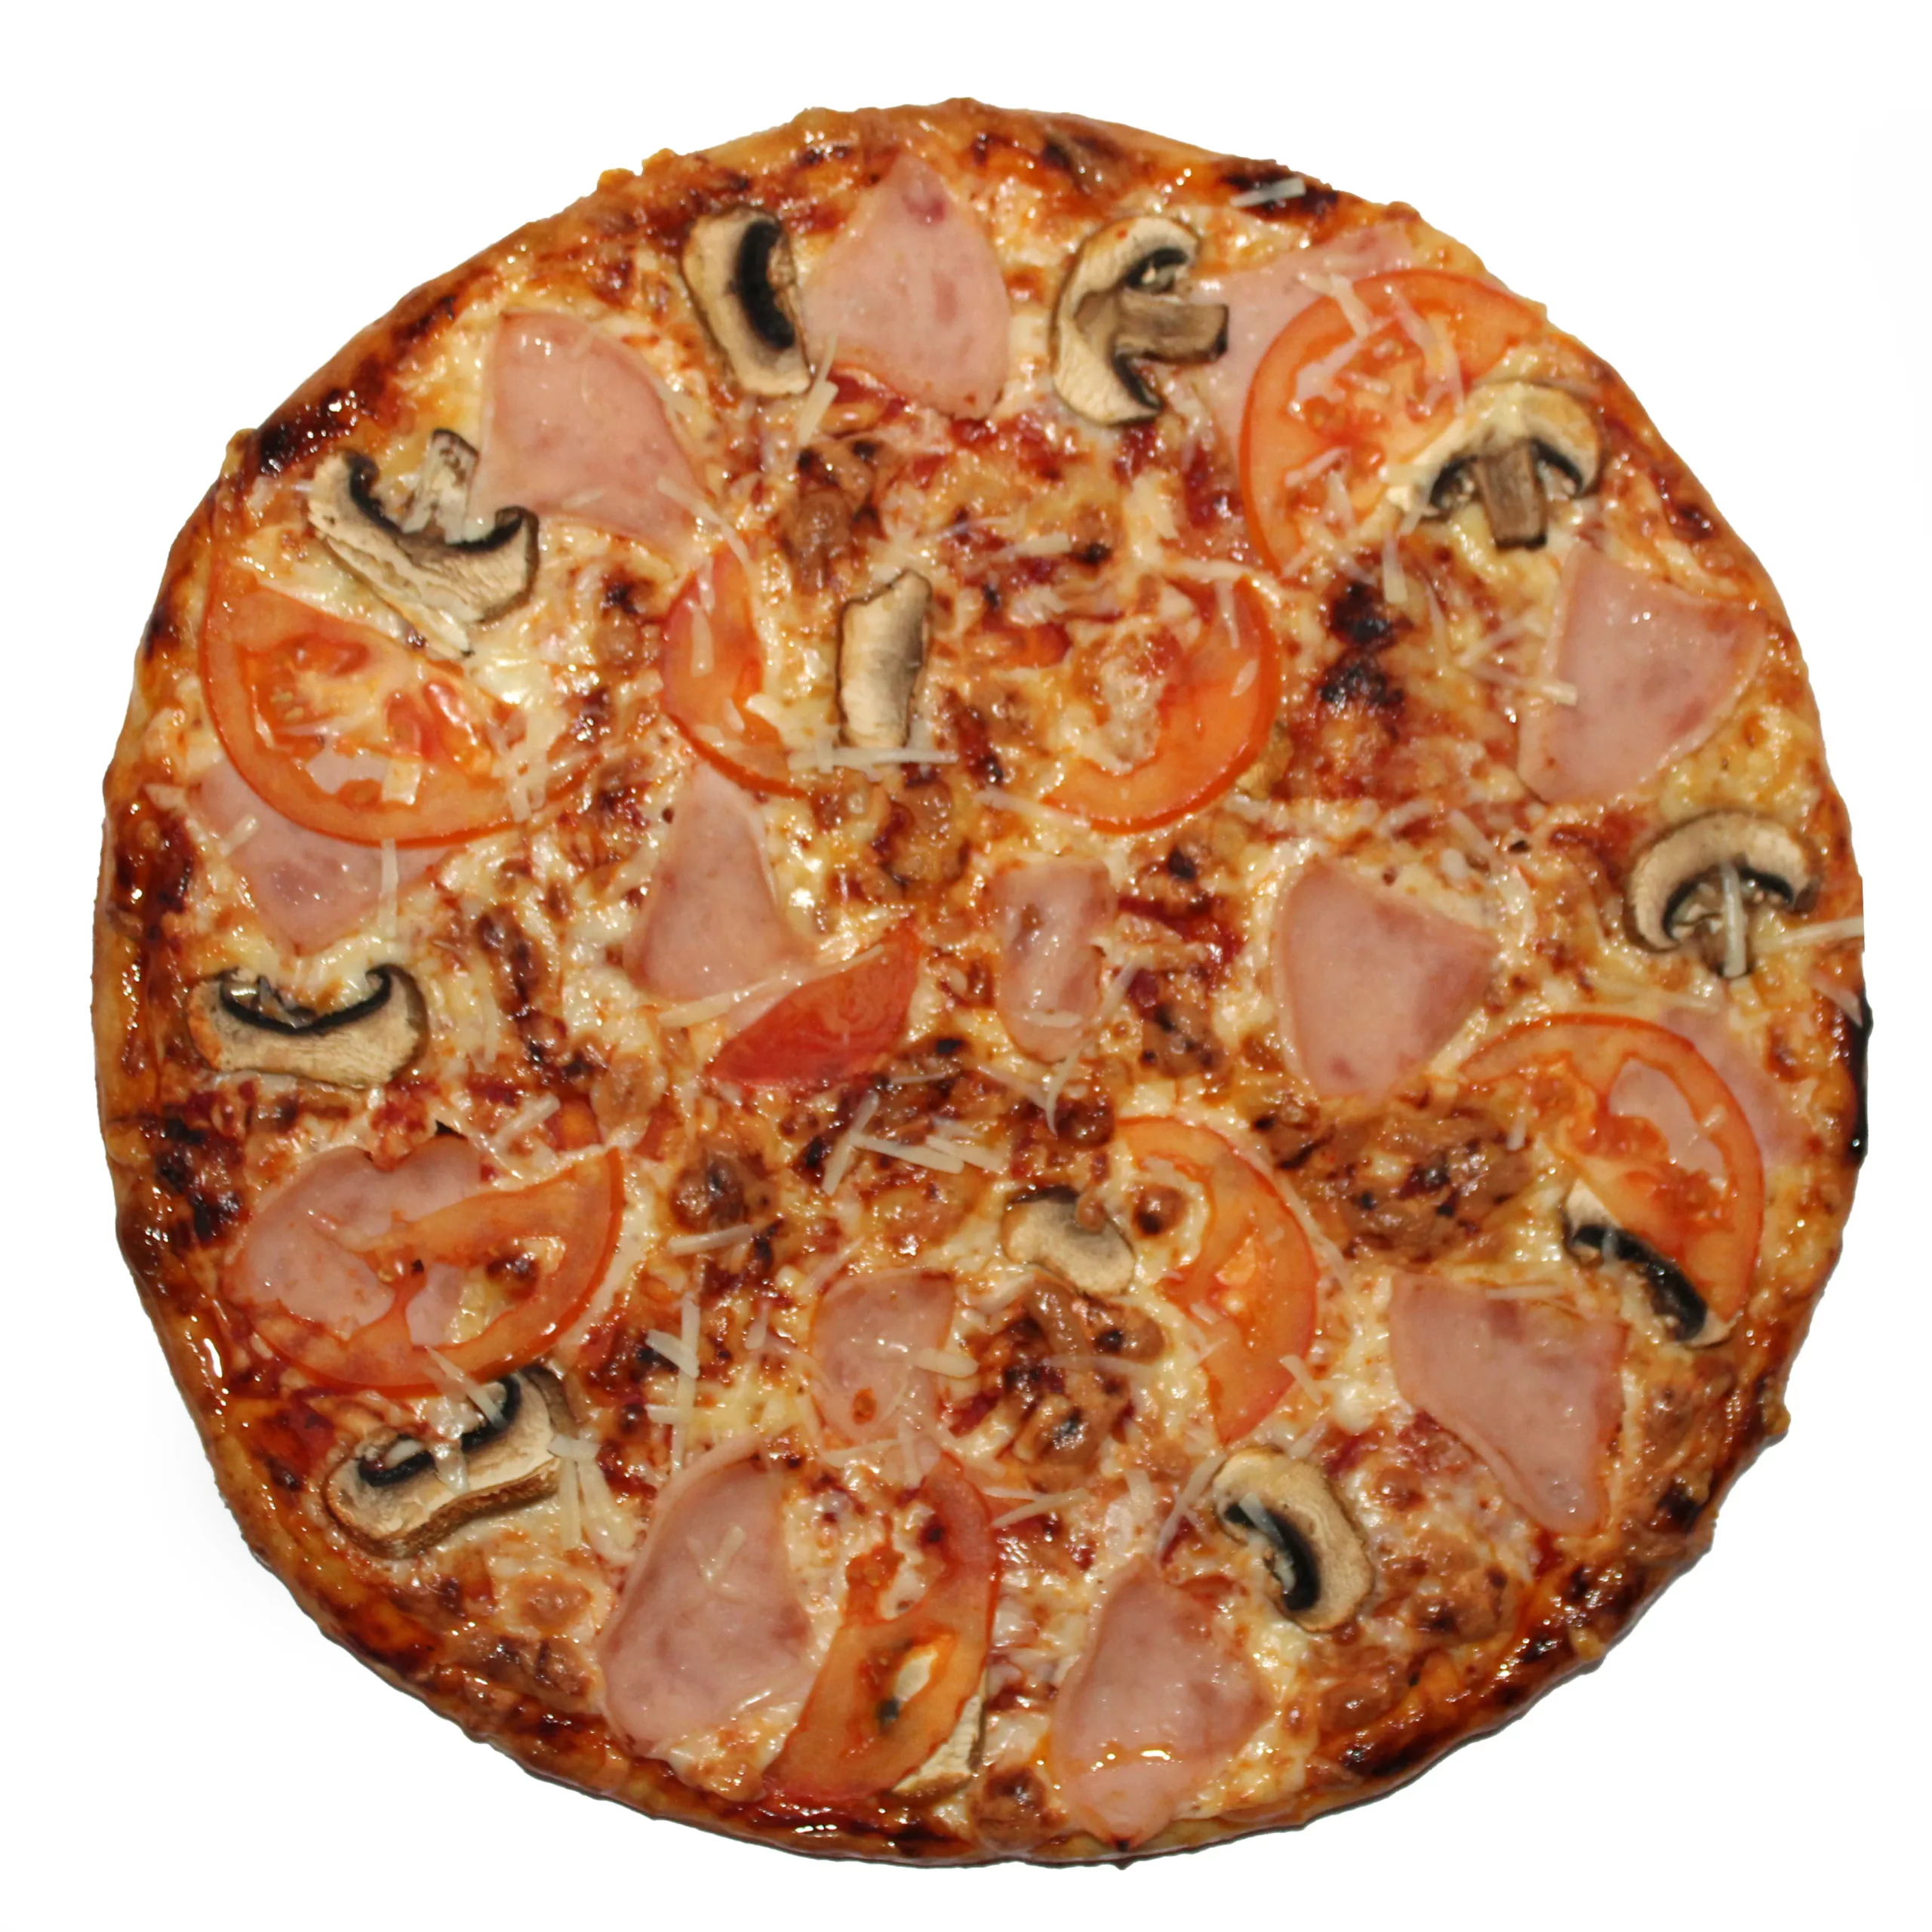 цезарь пицца замороженная с ветчиной и грибами отзывы фото 118